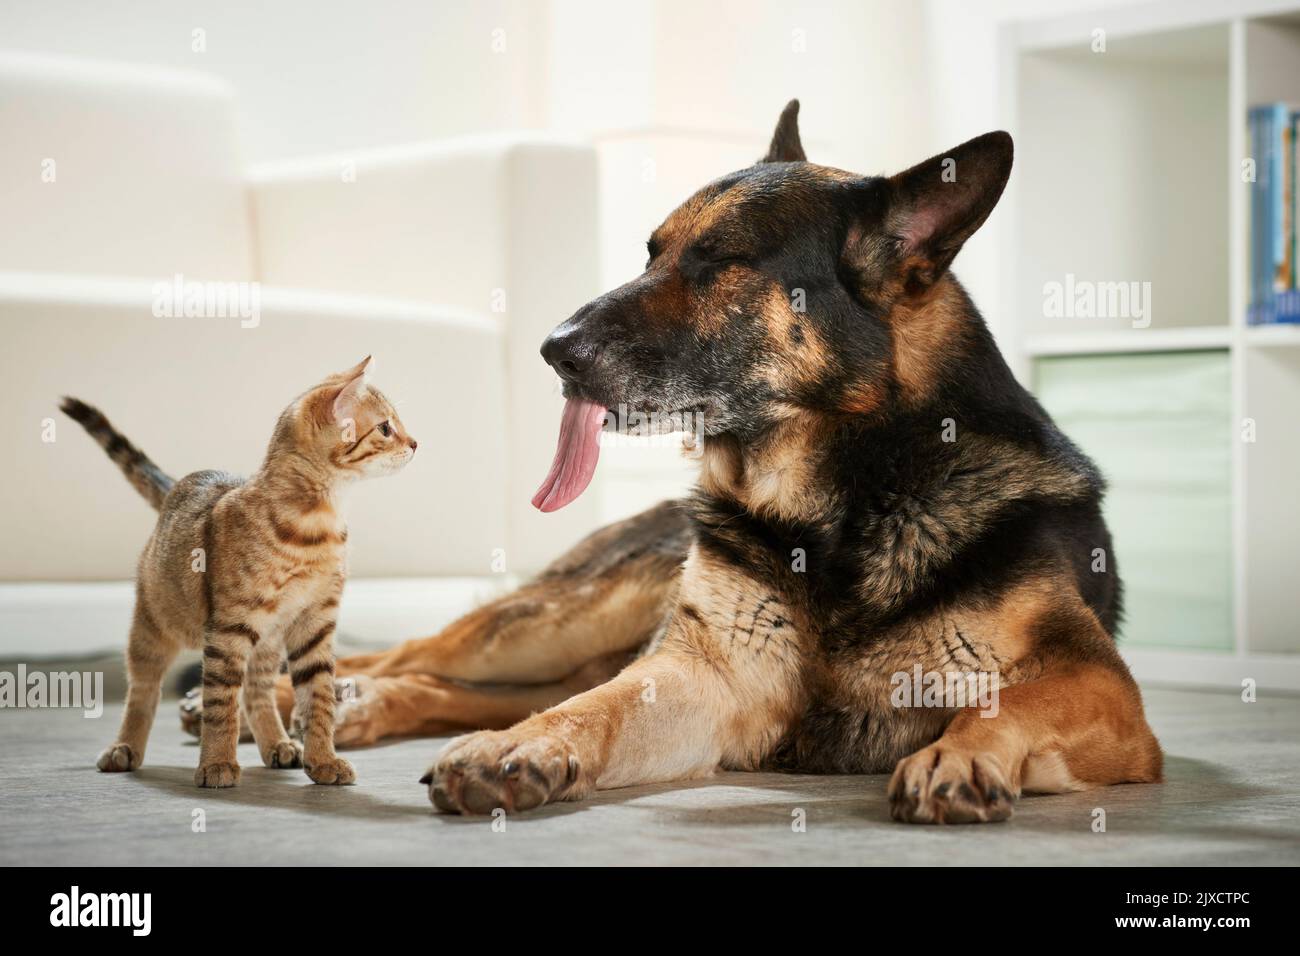 Gato doméstico. Un gatito se maravilla ante la lengua de un perro pastor alemán adulto. Alemania Foto de stock